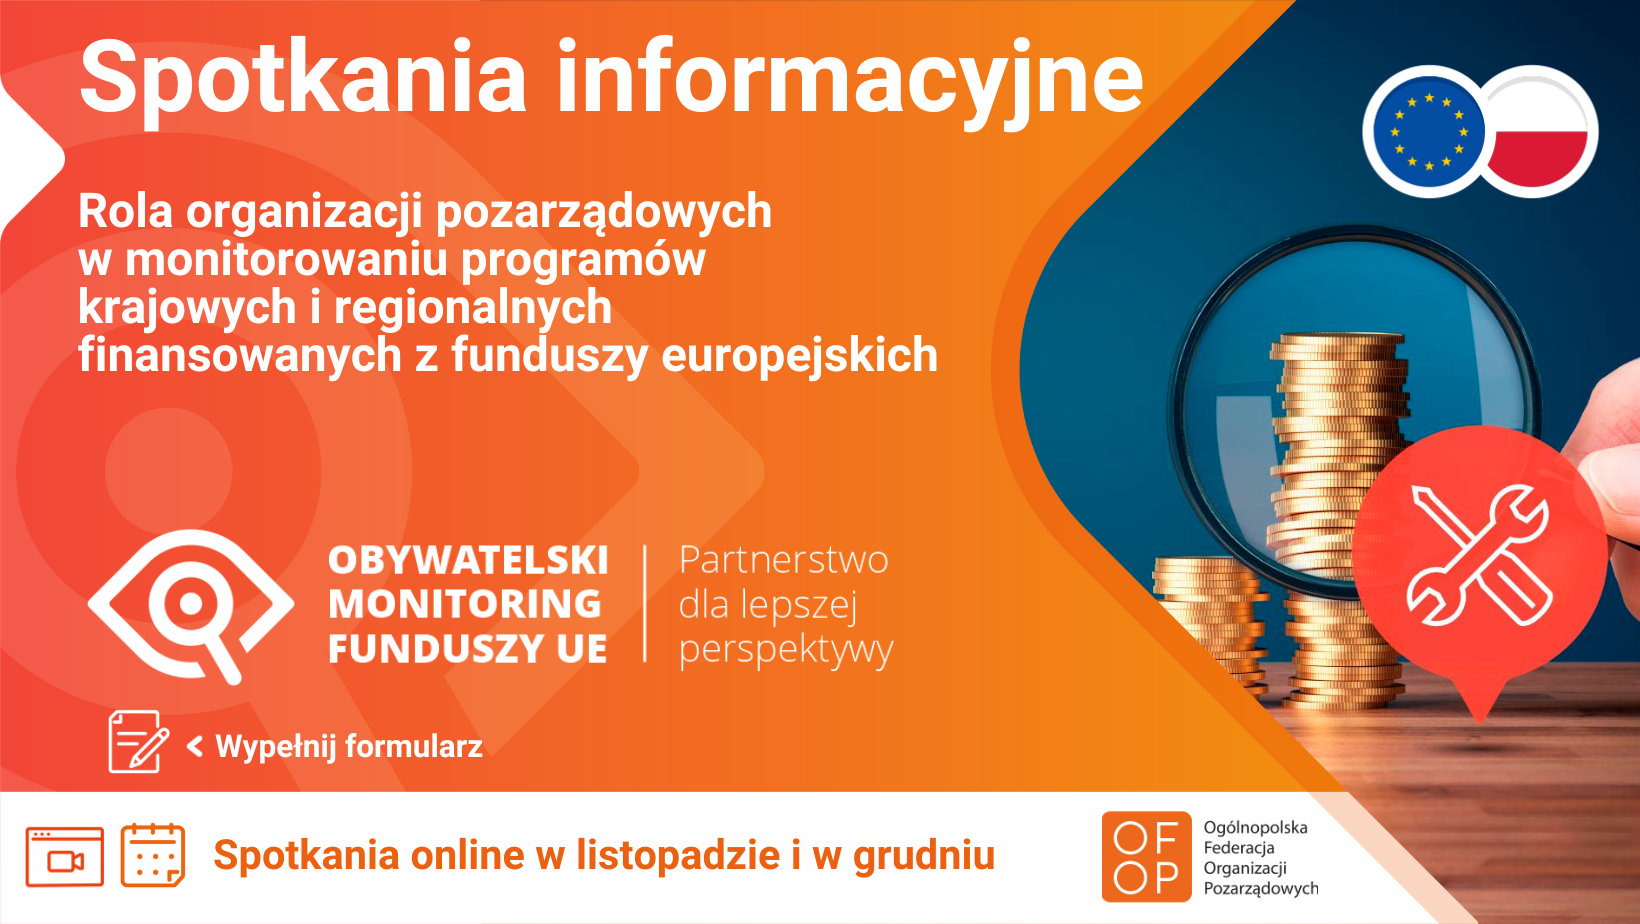 Plakat z informacjami. U góry napis Spotkania informacyjne. Na dole informacja spotkania online w listopadzie i grudniu. Obywatelski Monitoring Funduszy UE